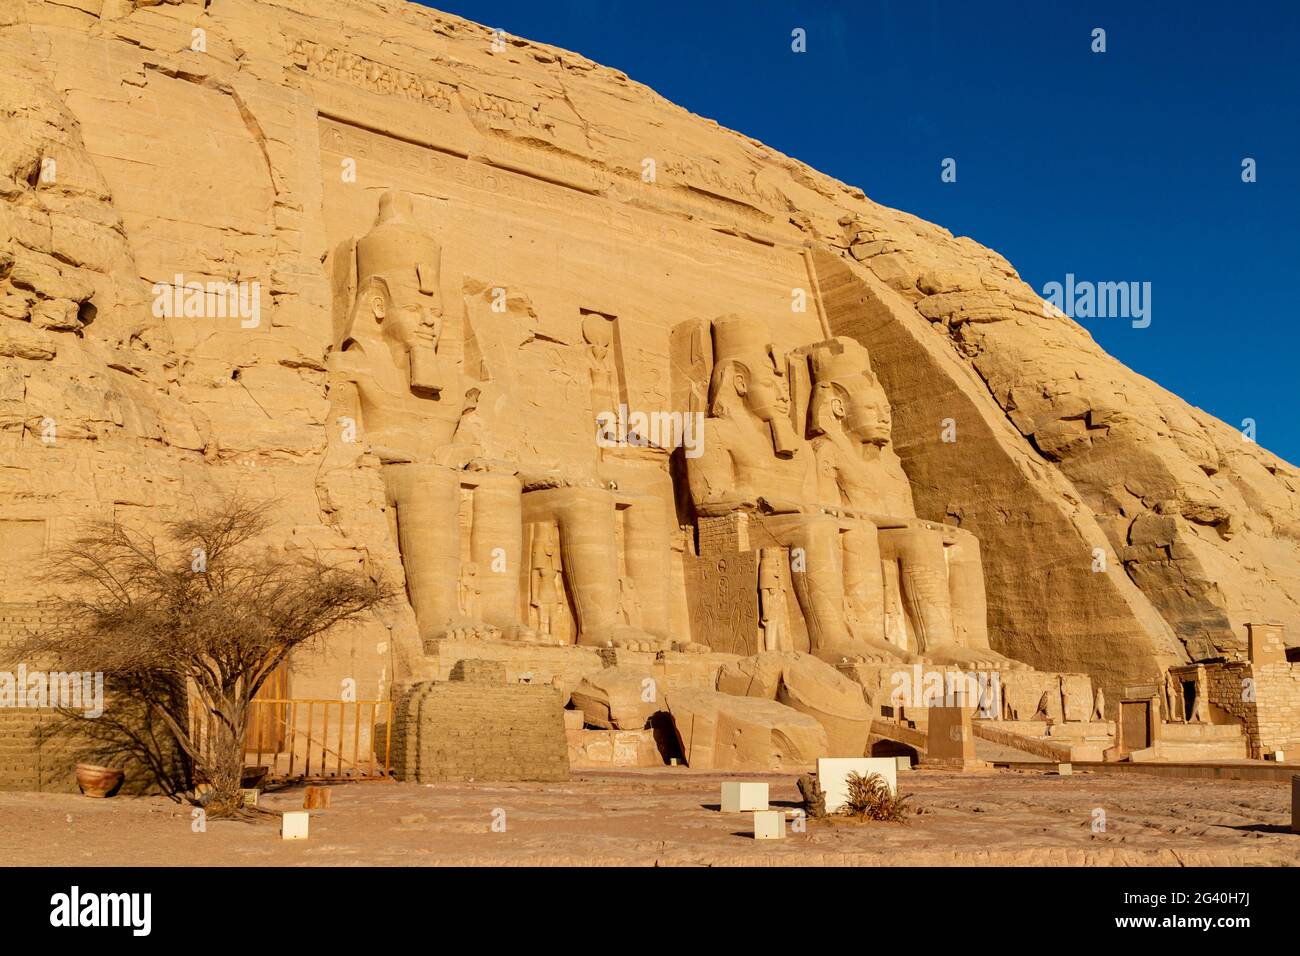 Les temples d'Abou Simbel en Egypte Banque D'Images